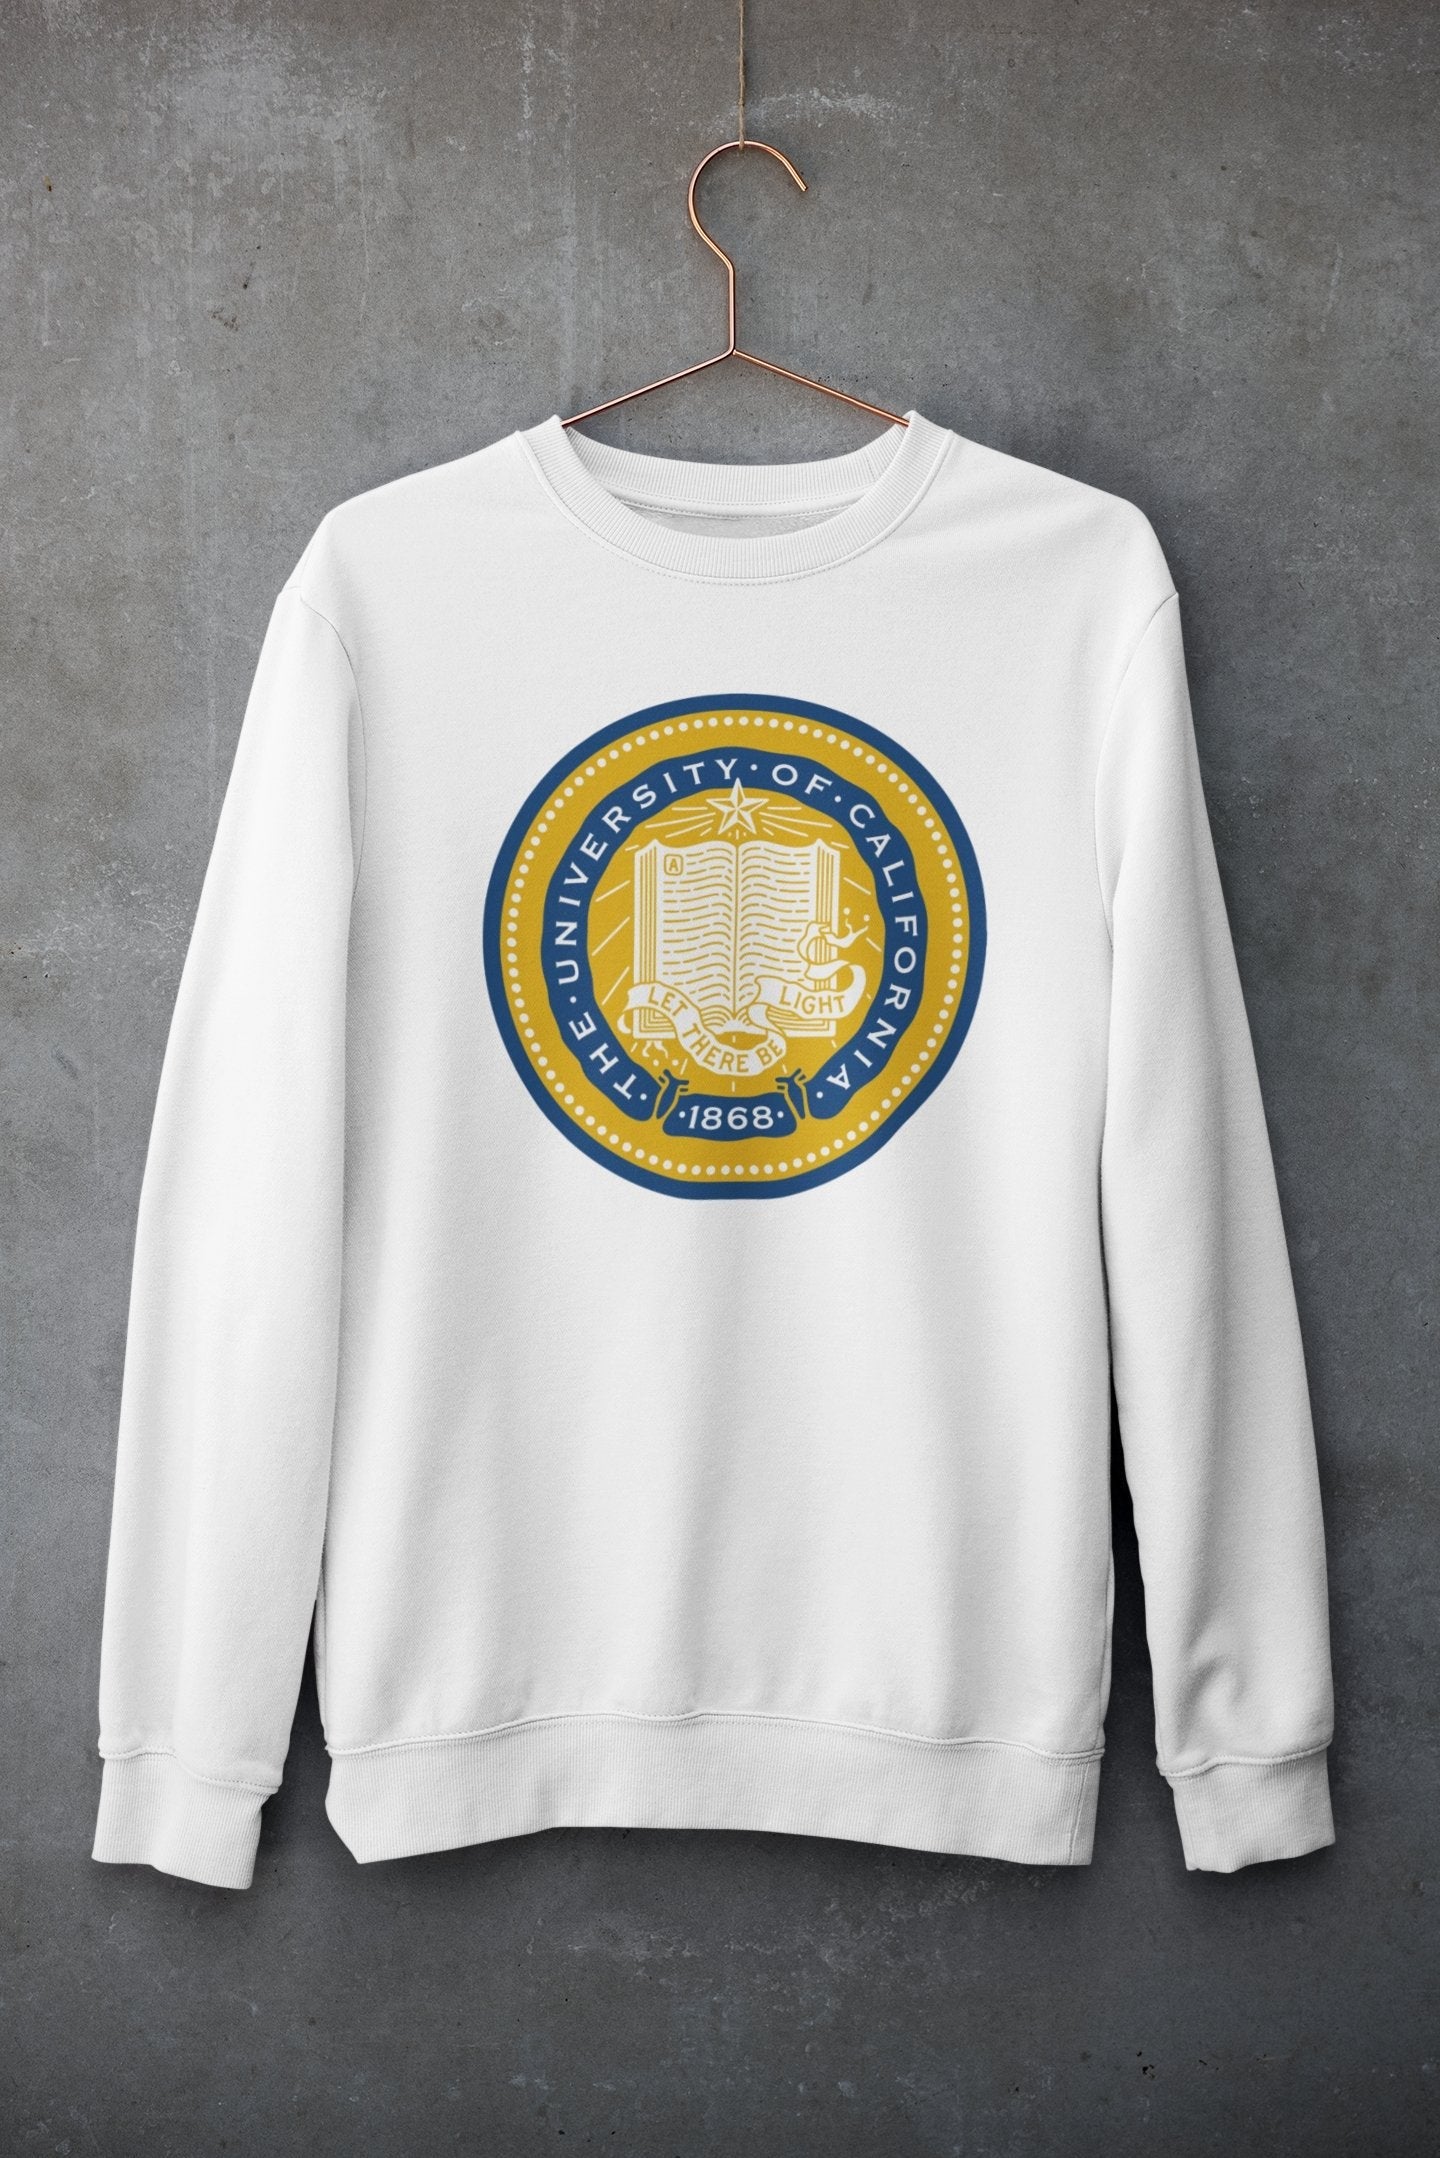 California Varsity Graphic Sweatshirt